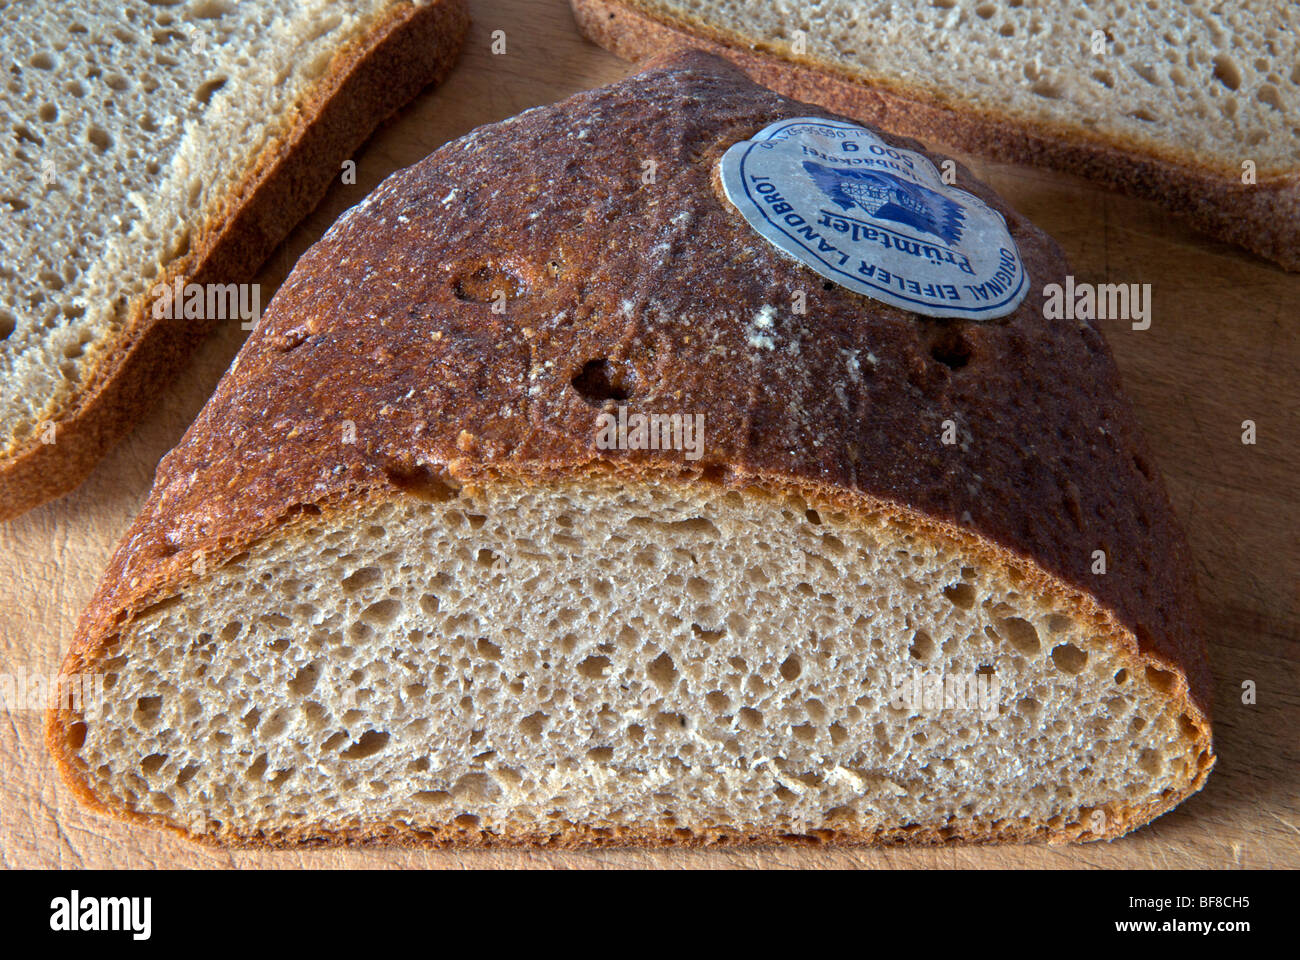 Eifeler Brot aus der Eifel-Region Deutschlands Stockfotografie - Alamy